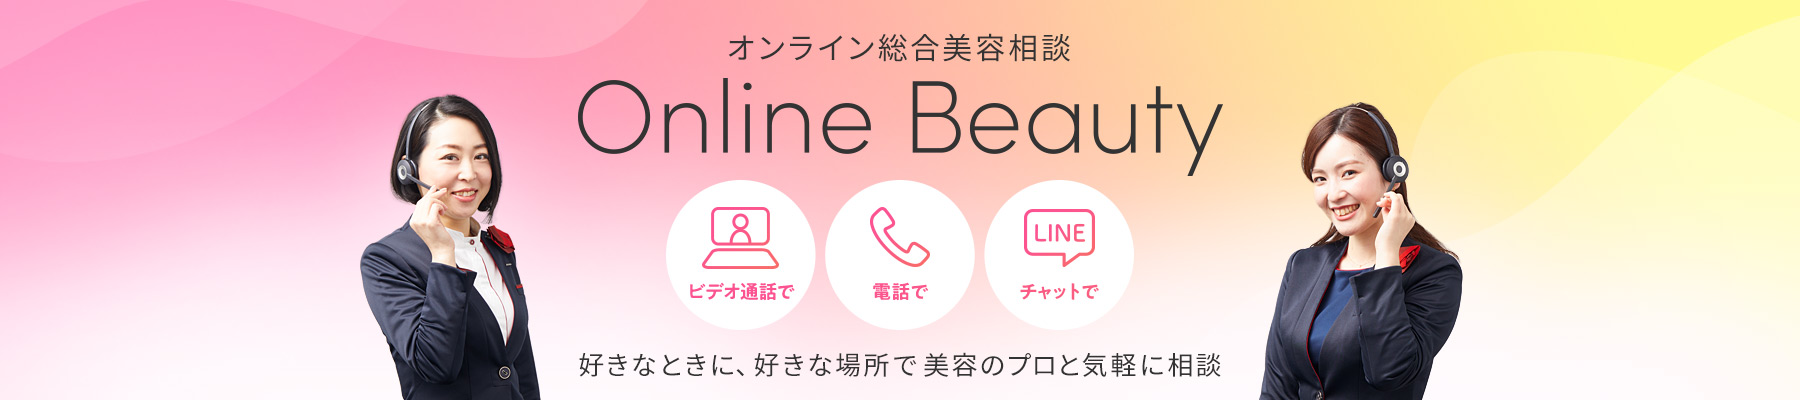 オンライン総合美容相談 Online Beauty 好きなときに、好きな場所で美容のプロと気軽に相談